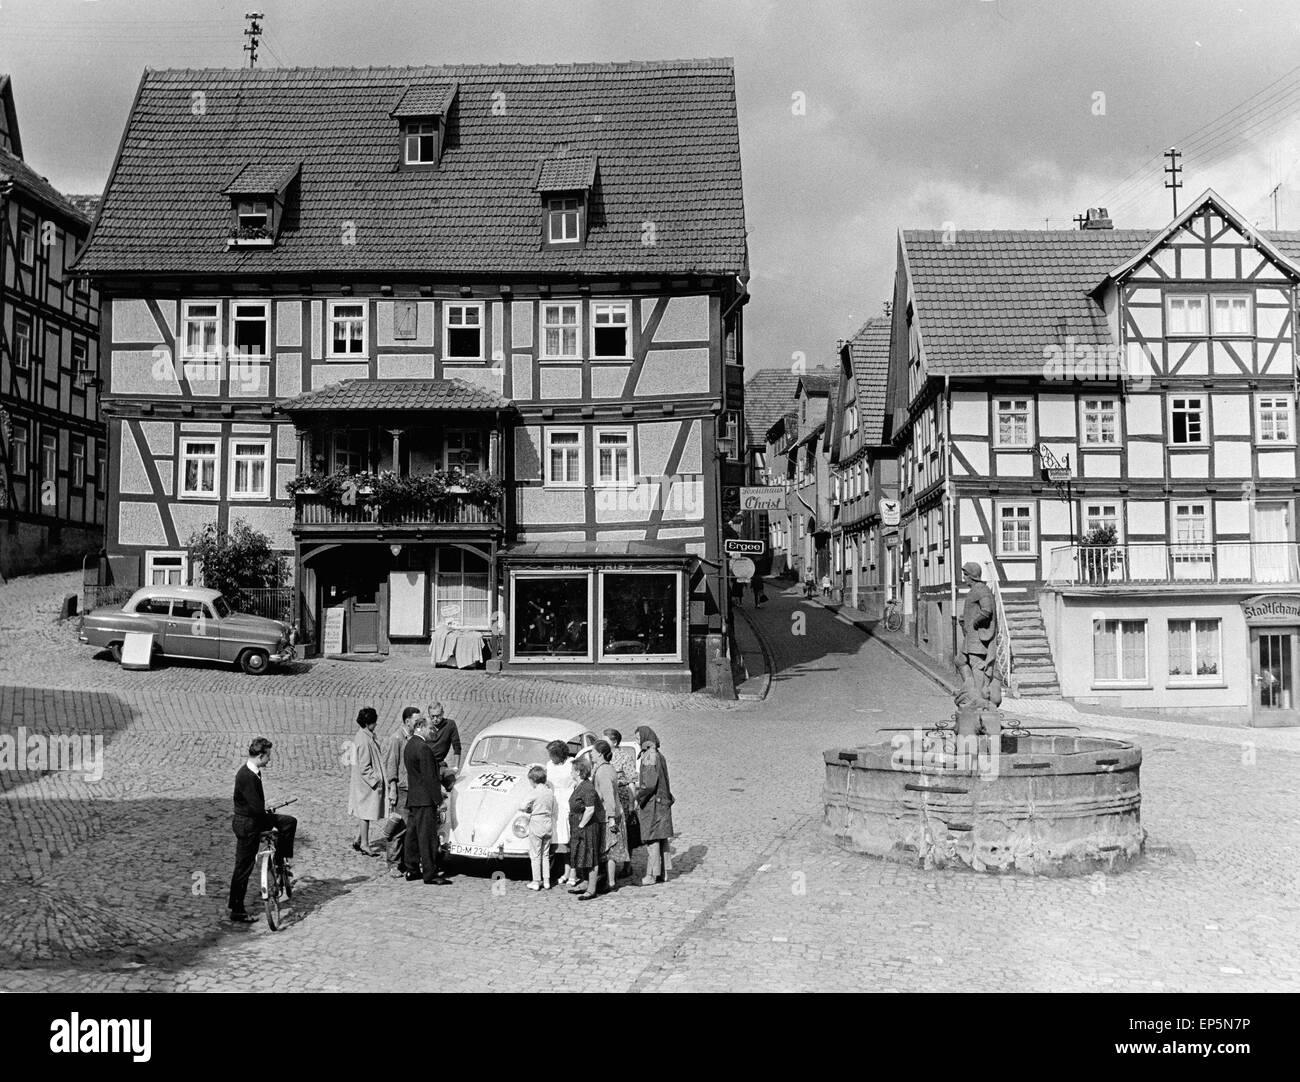 Das HörZu Mittwochsauto auf einem von Fachwerkhäusern umsäumten Platz in Schlitz in Osthessen, Deutschland Anfang 1970er Jahre. Stock Photo